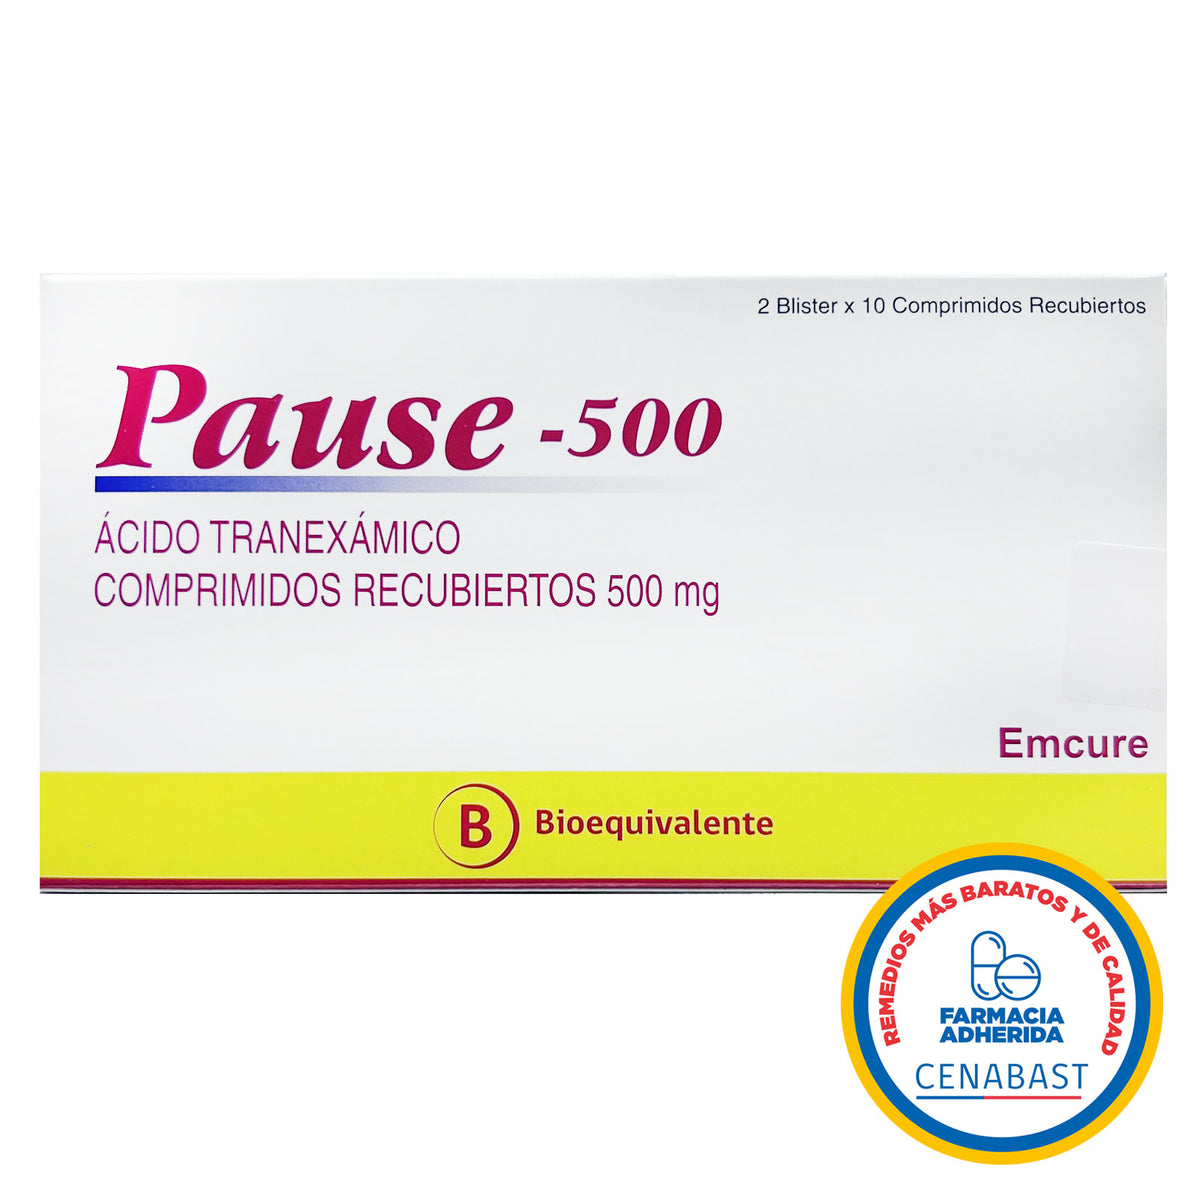 Pause-500 Comprimidos Recubiertos 500mg Producto Cenabast